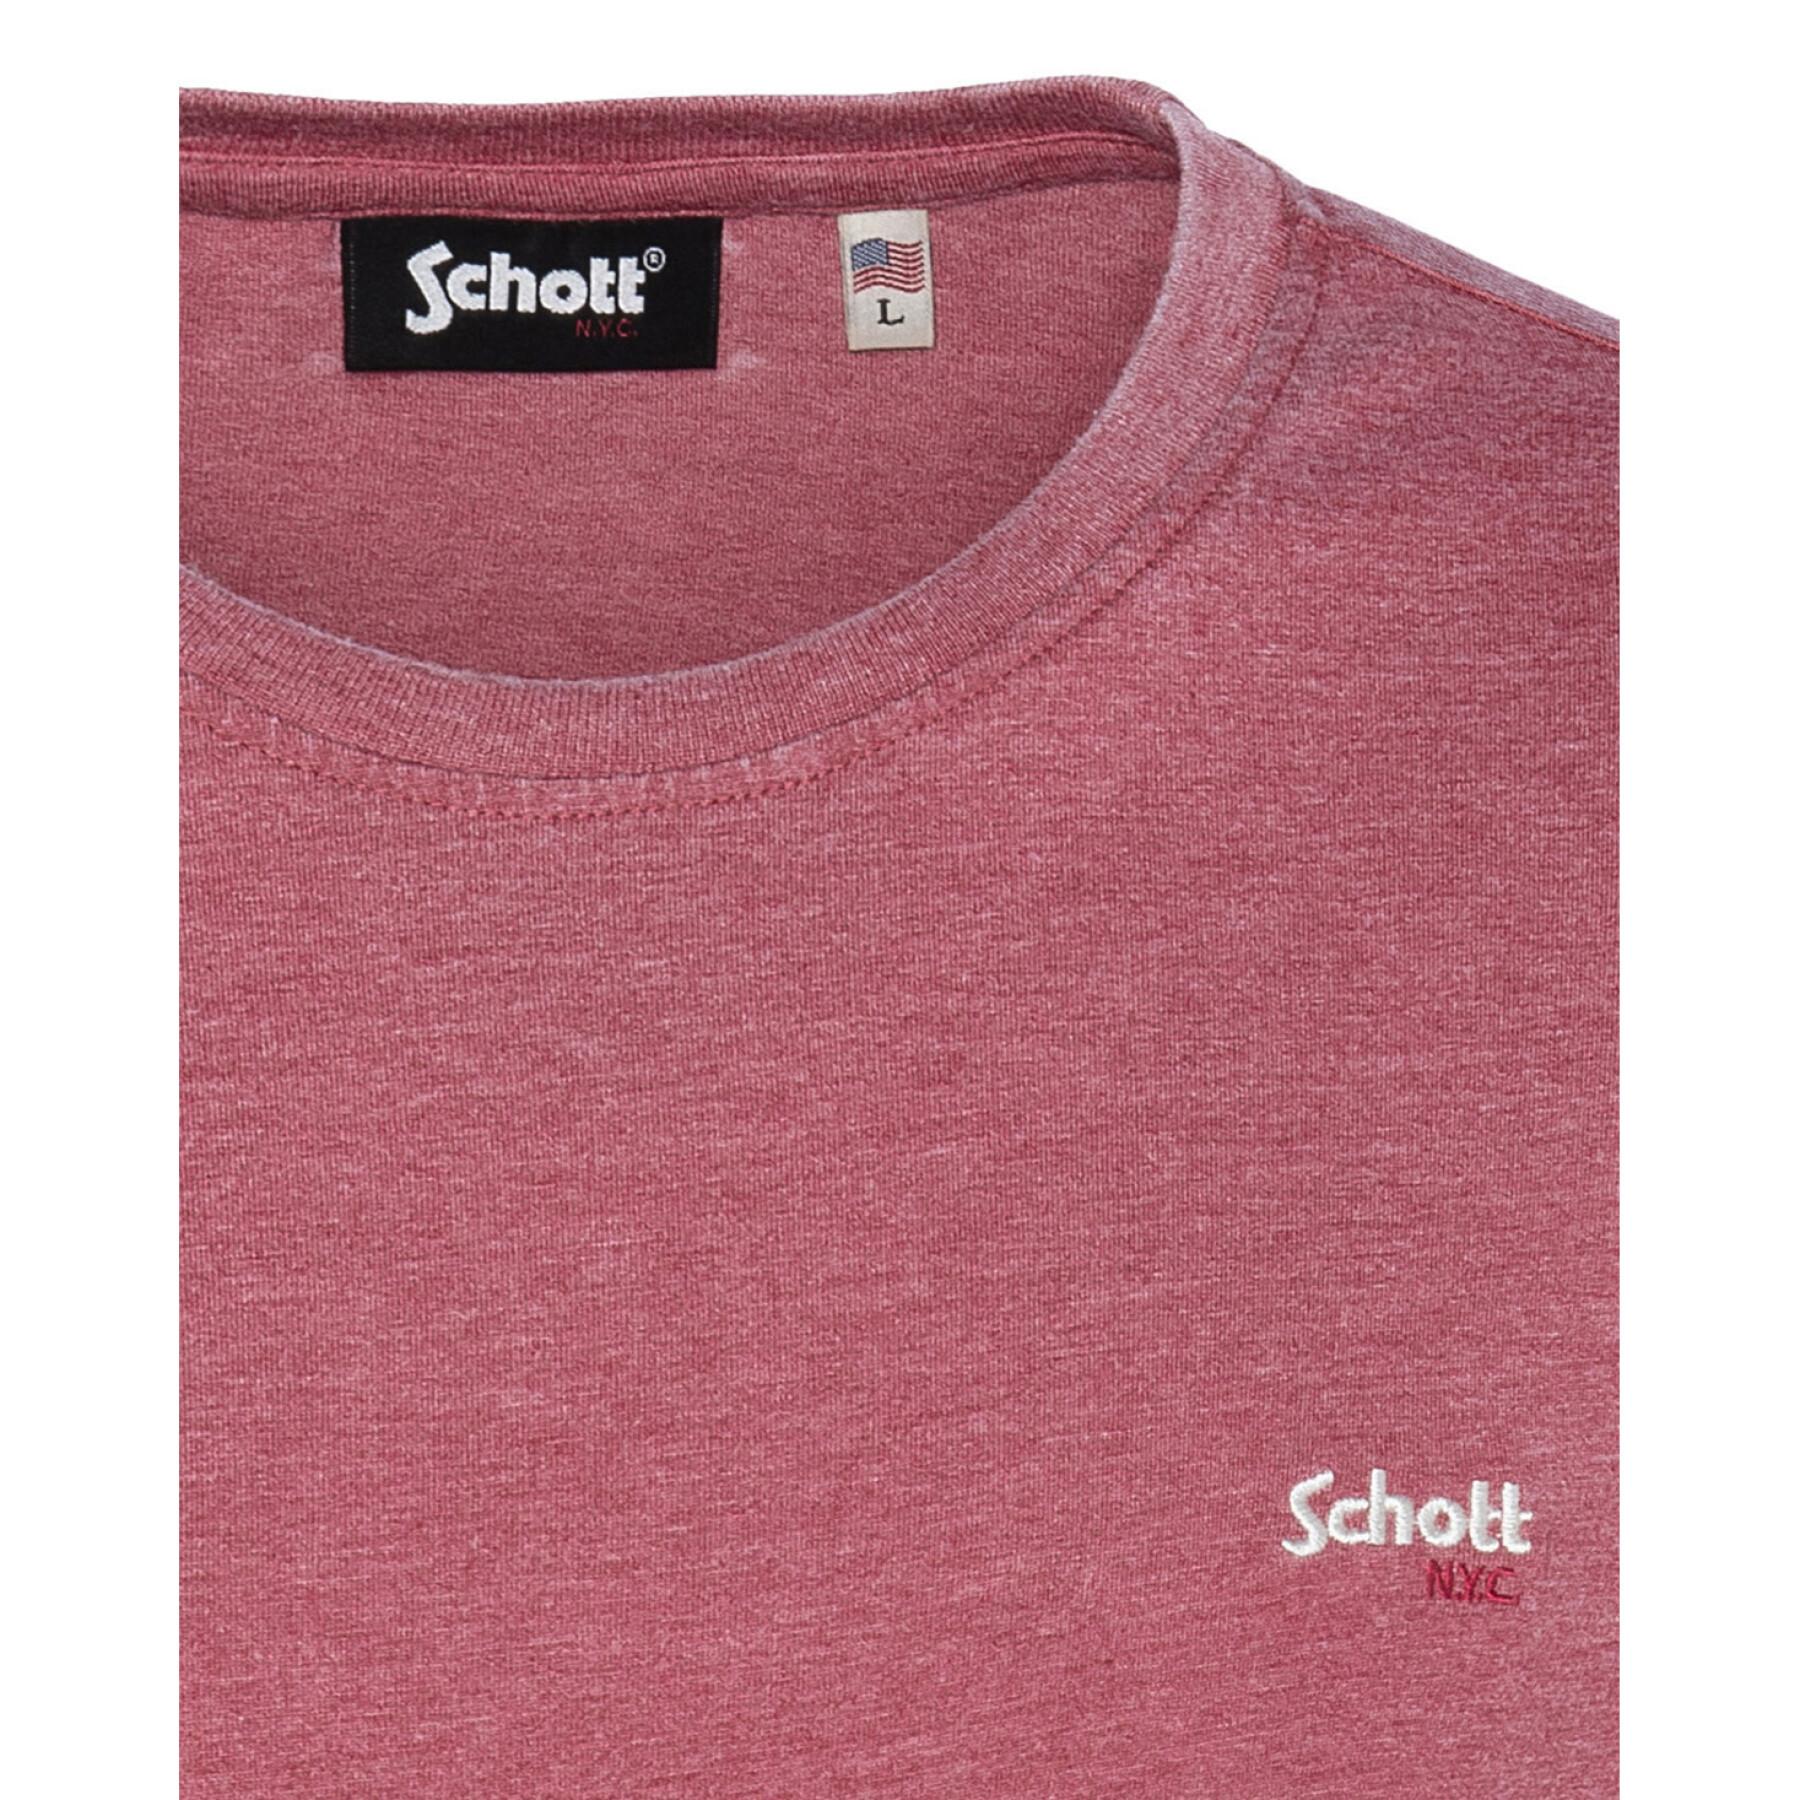 Koszulka Schott Mc Cn